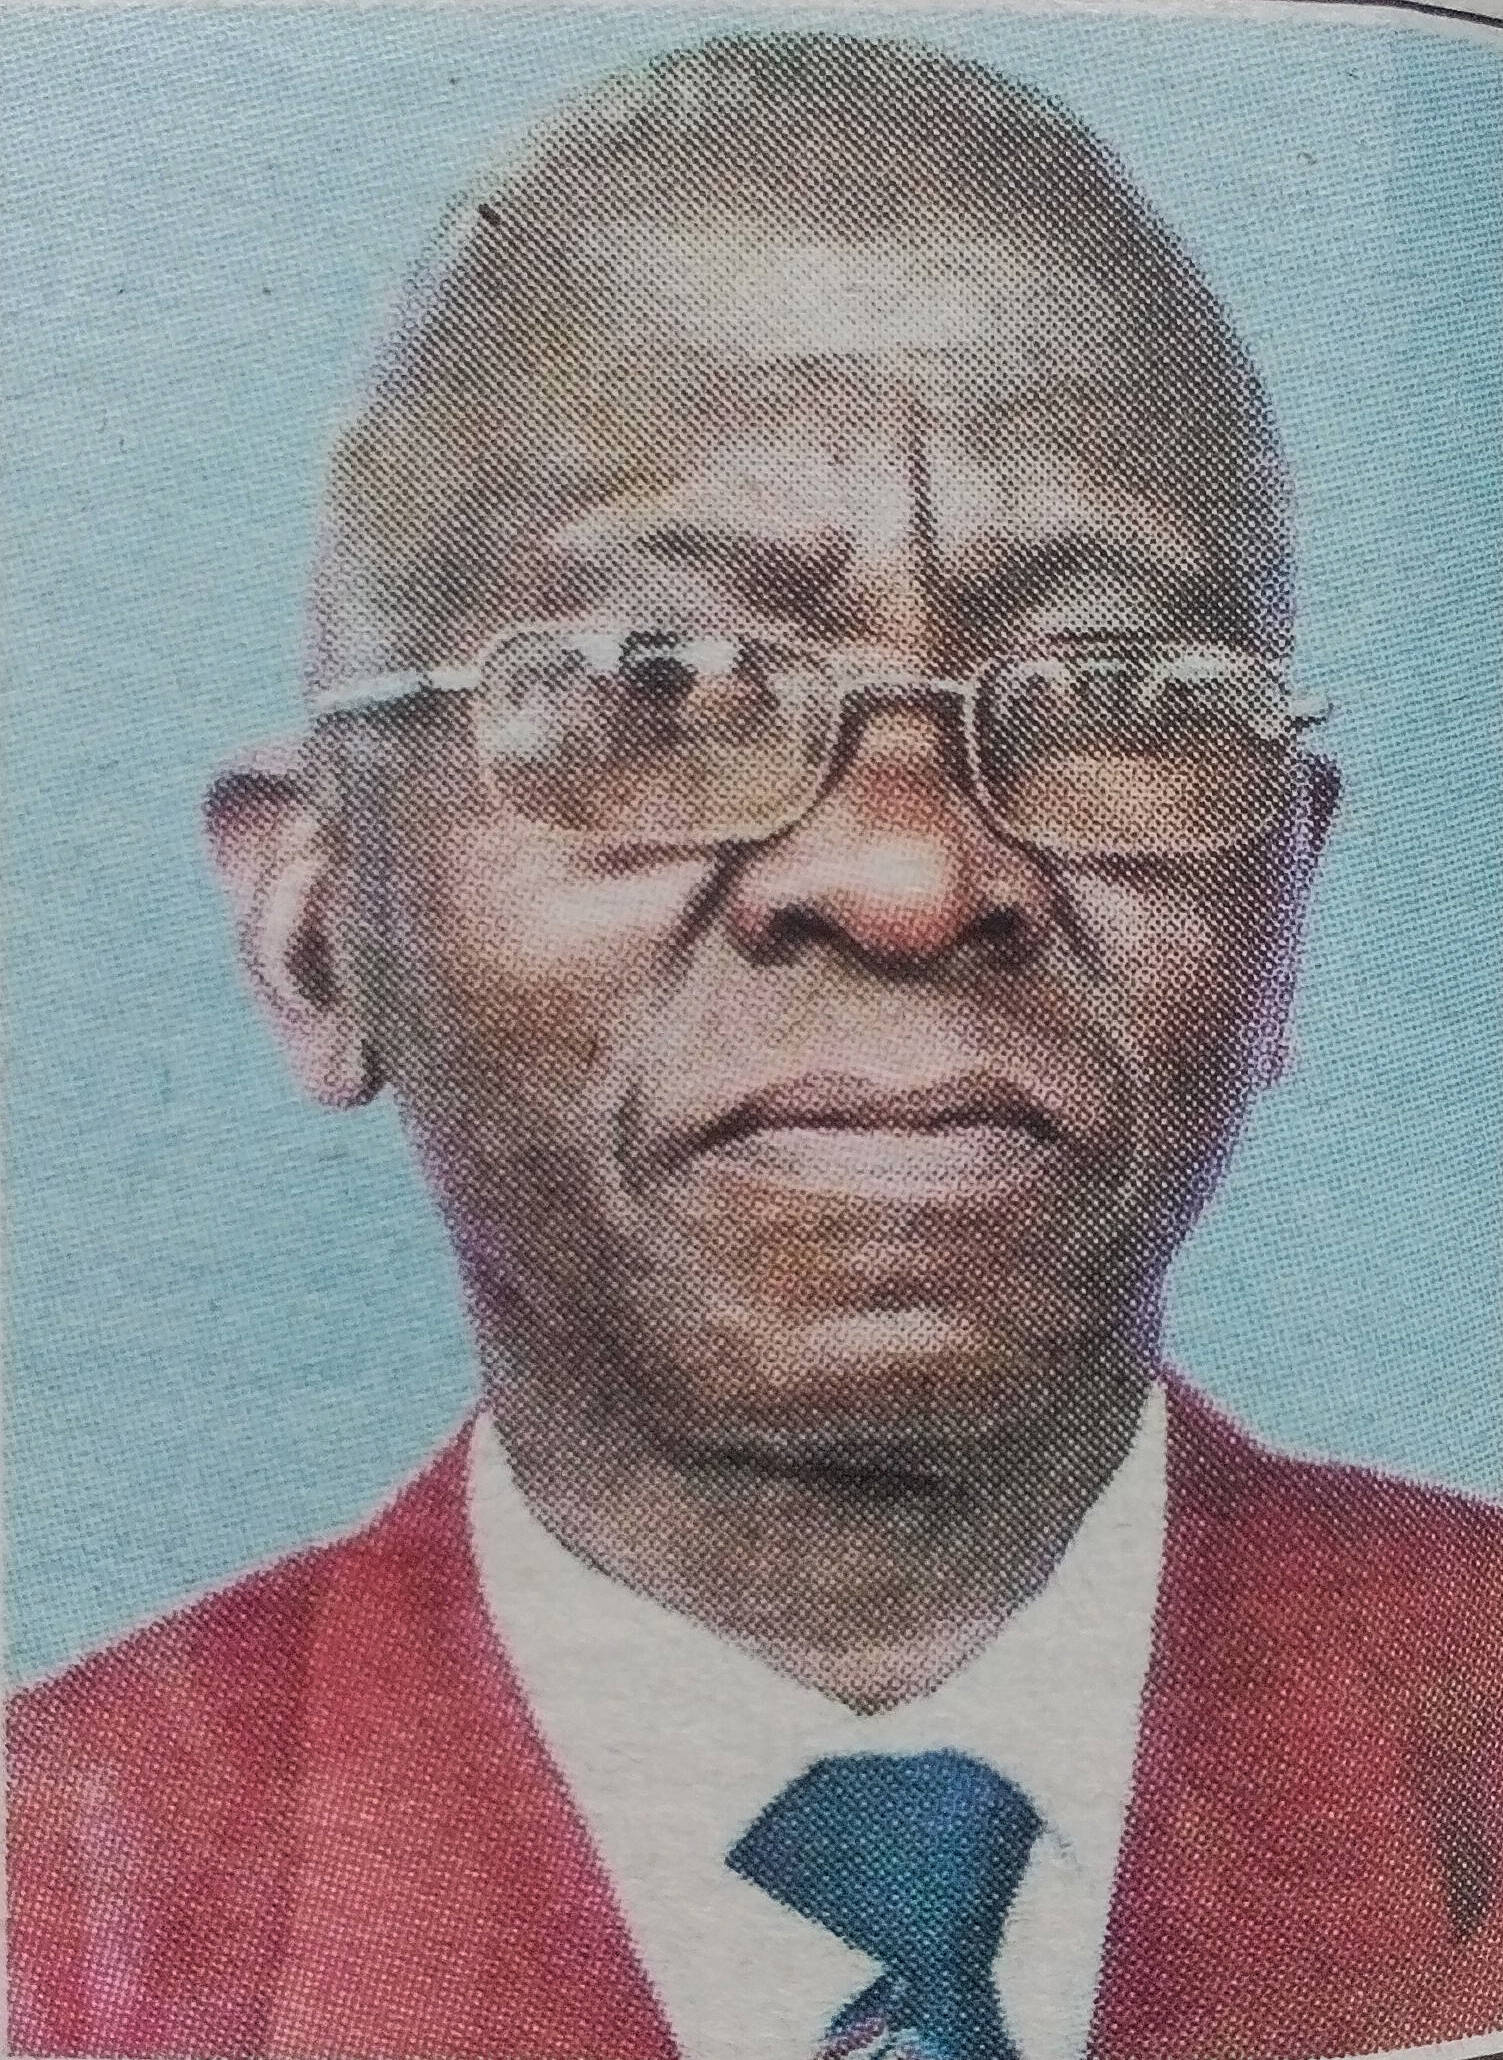 Obituary Image of Samuel Kinyanjuif Ngugi